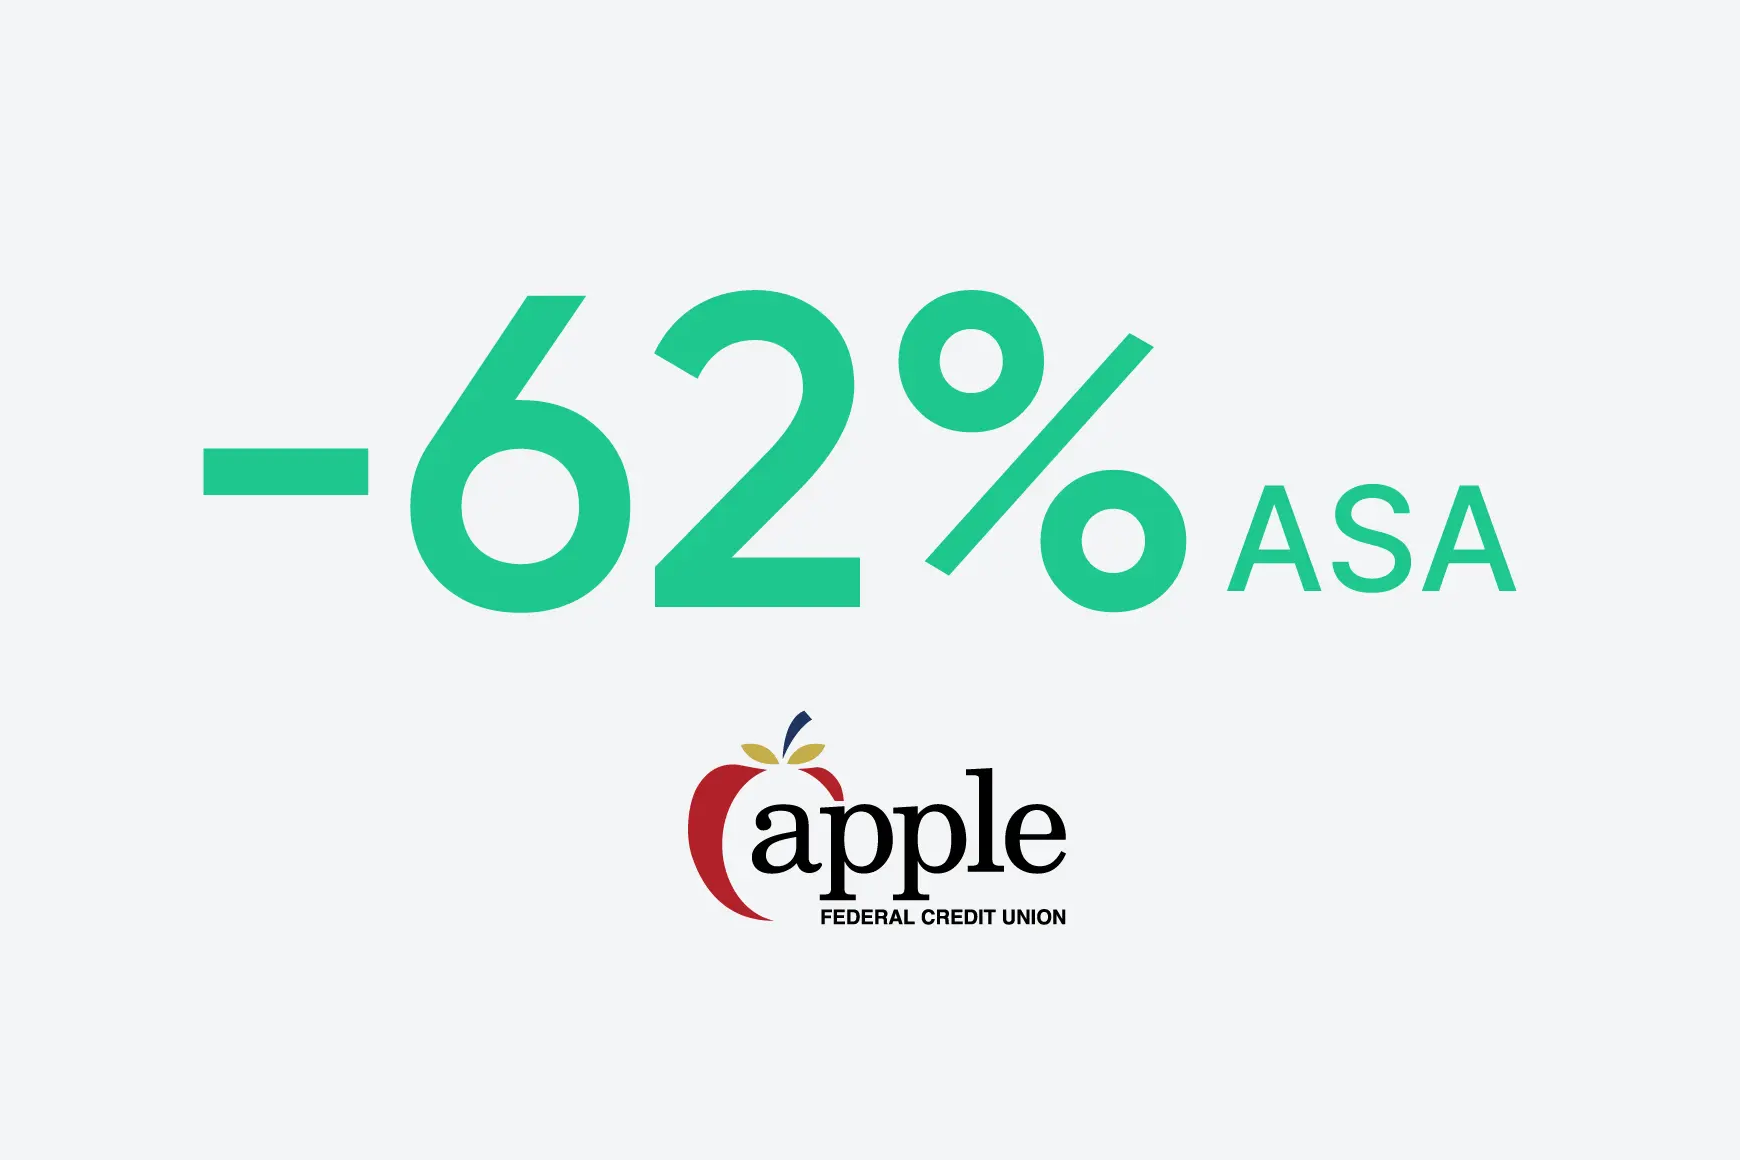 A Apple Federal Credit Union reduziu 62% a ASA